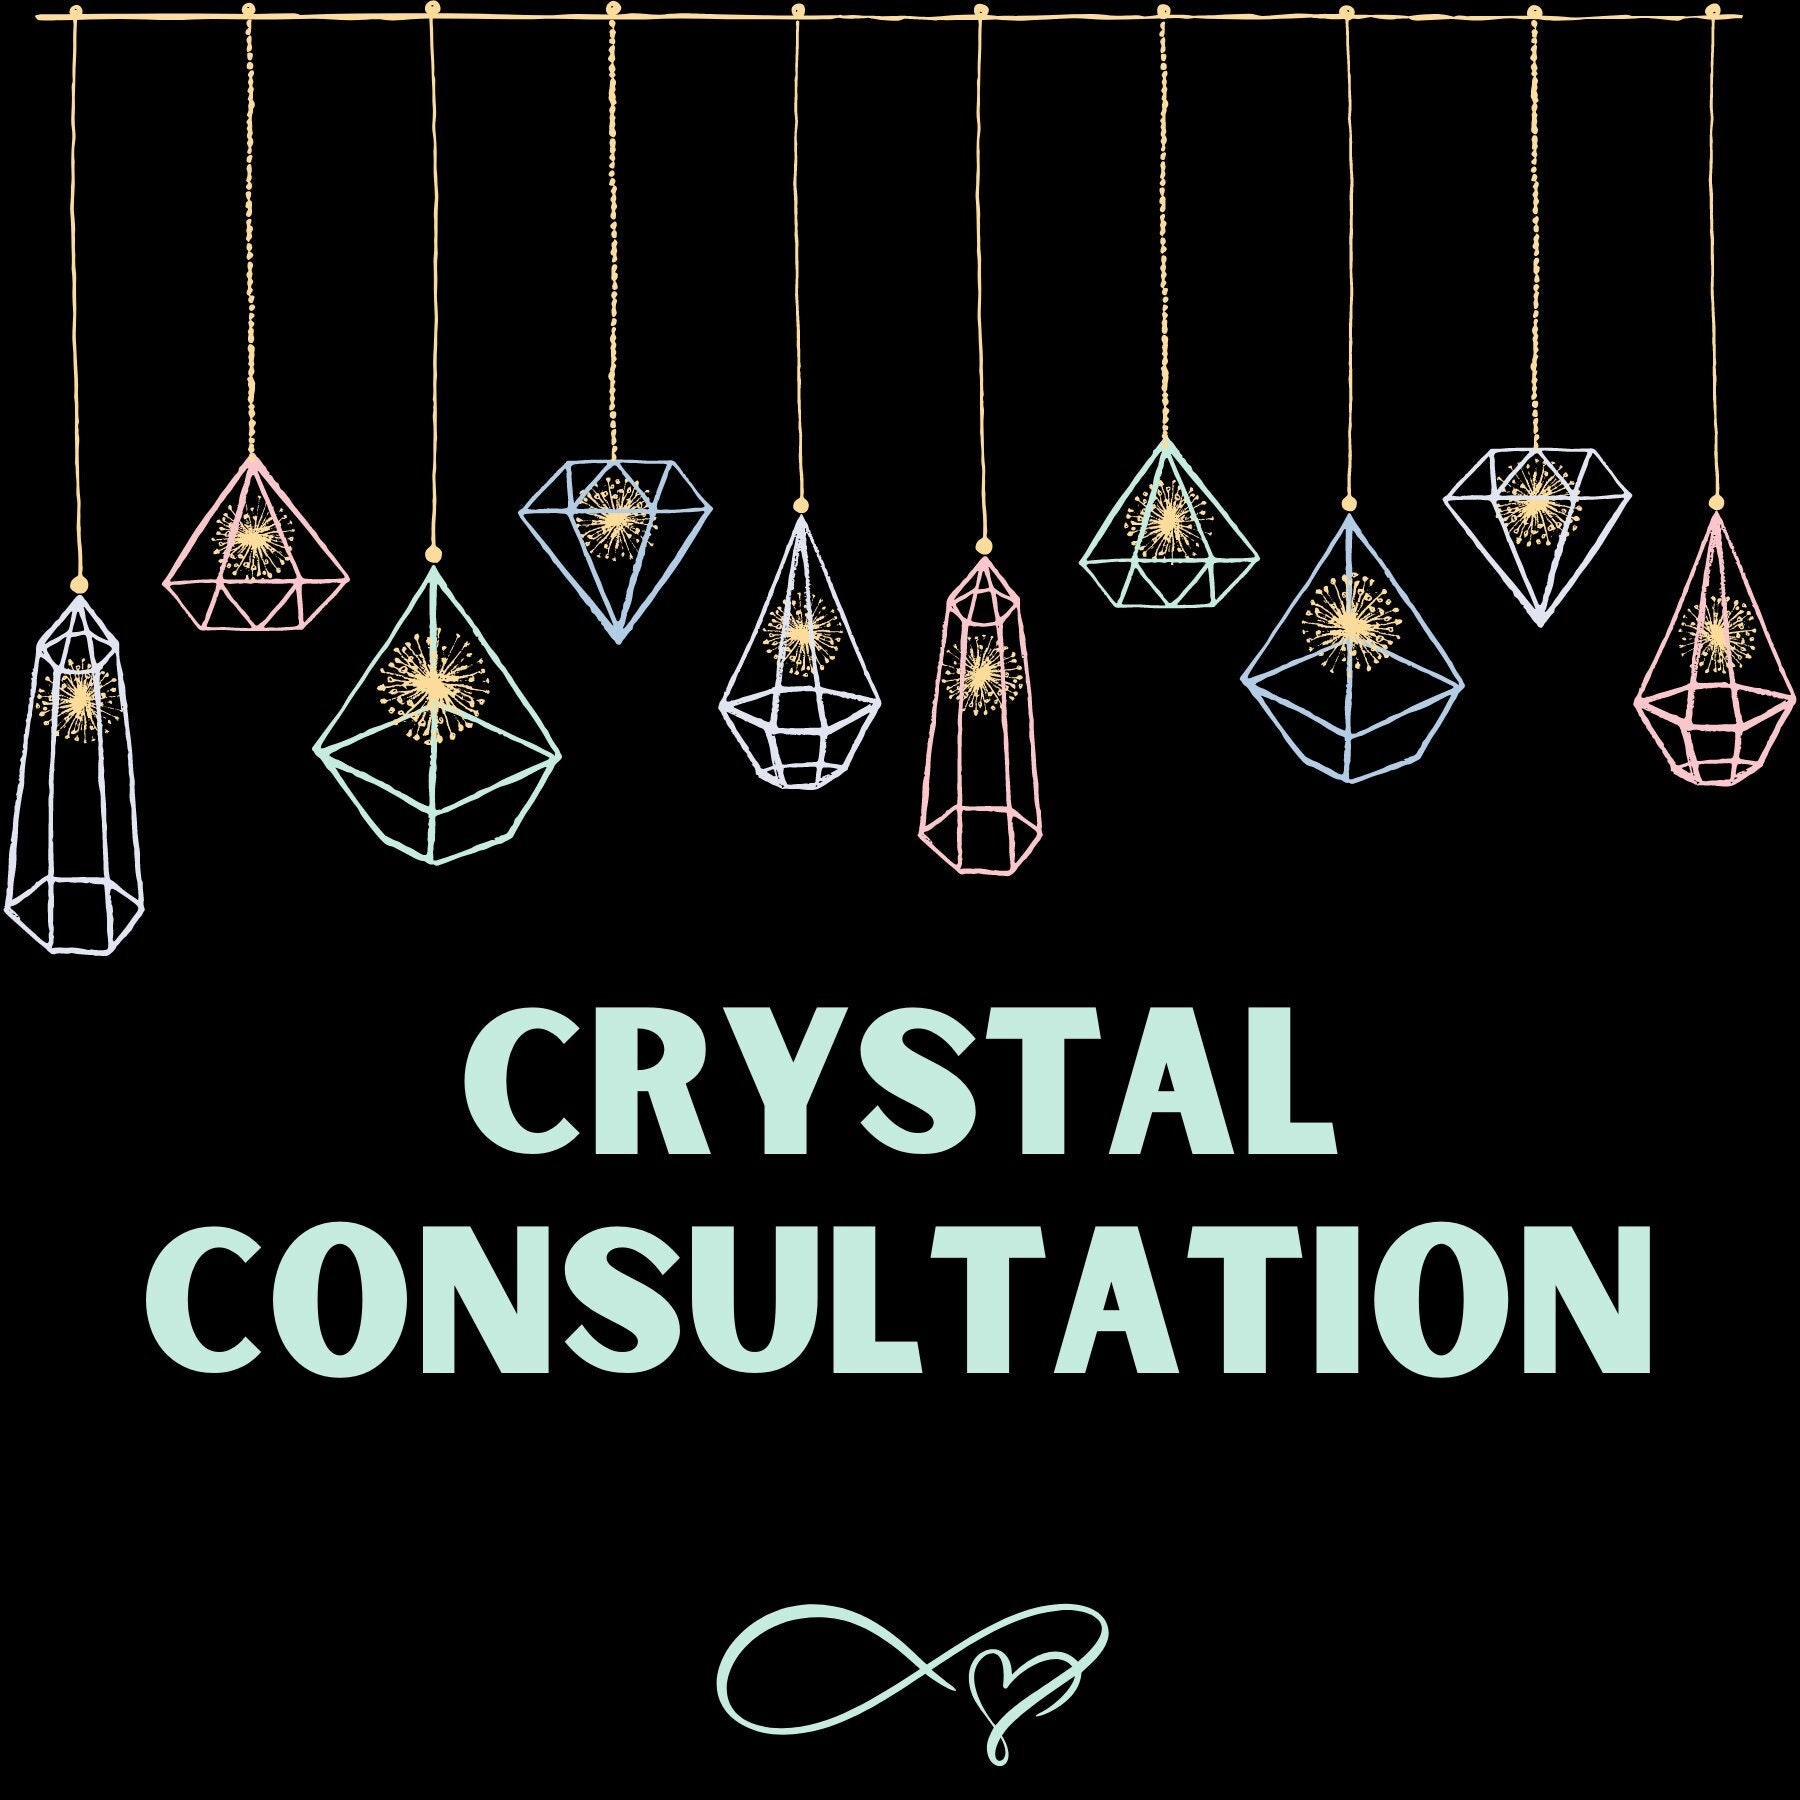 Crystal Consultation Personnalisé Pour Vous et Ce Dont Avez Besoin en Moment, Grilles de Cristal Per